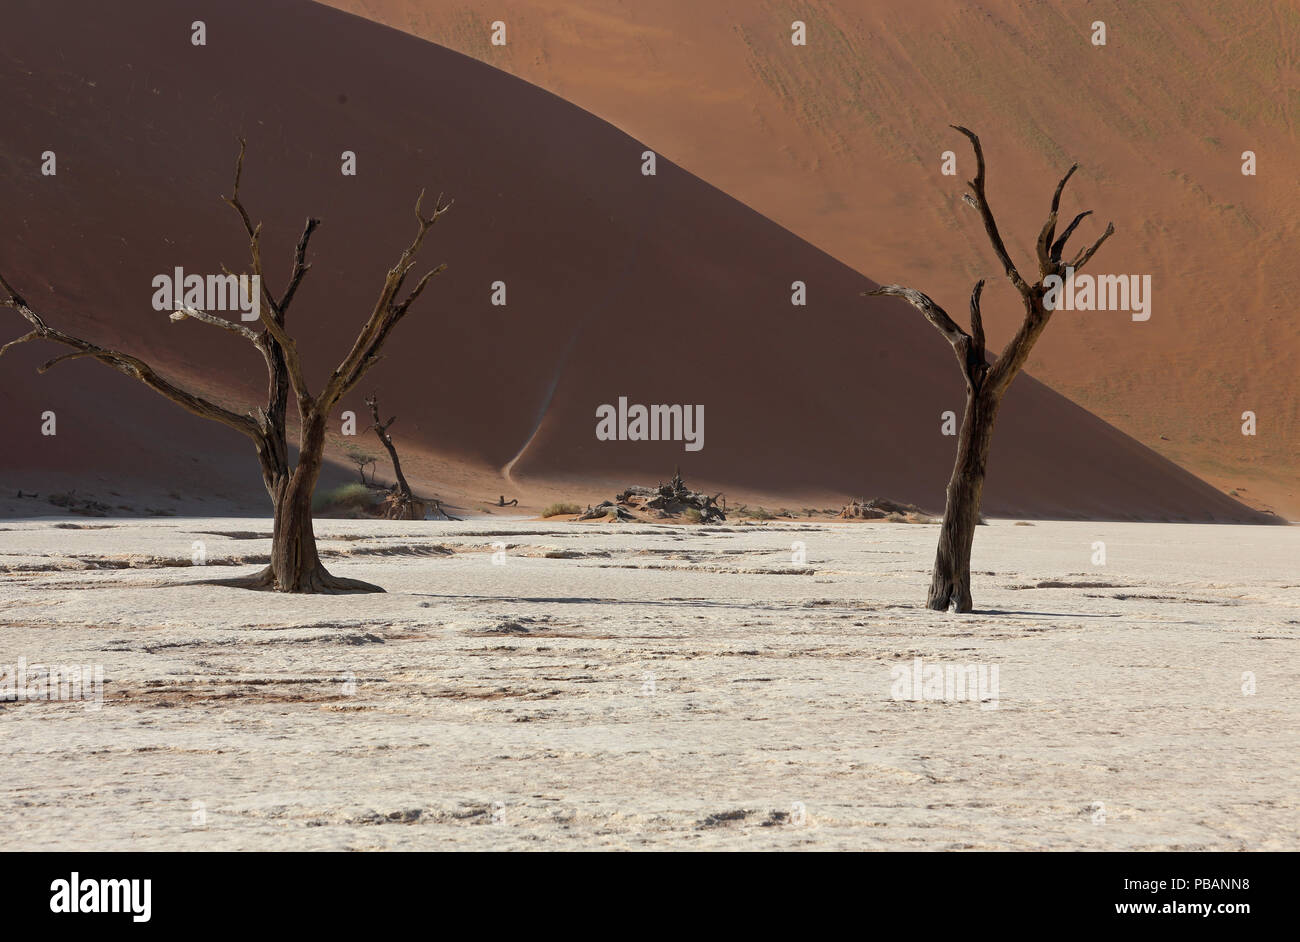 Chameau anciens arbres épineux (Acacia erioloba) à Deadvlei, Namibie, avec Big Daddy, à 325m, la plus haute dune de sable dans le monde. Banque D'Images